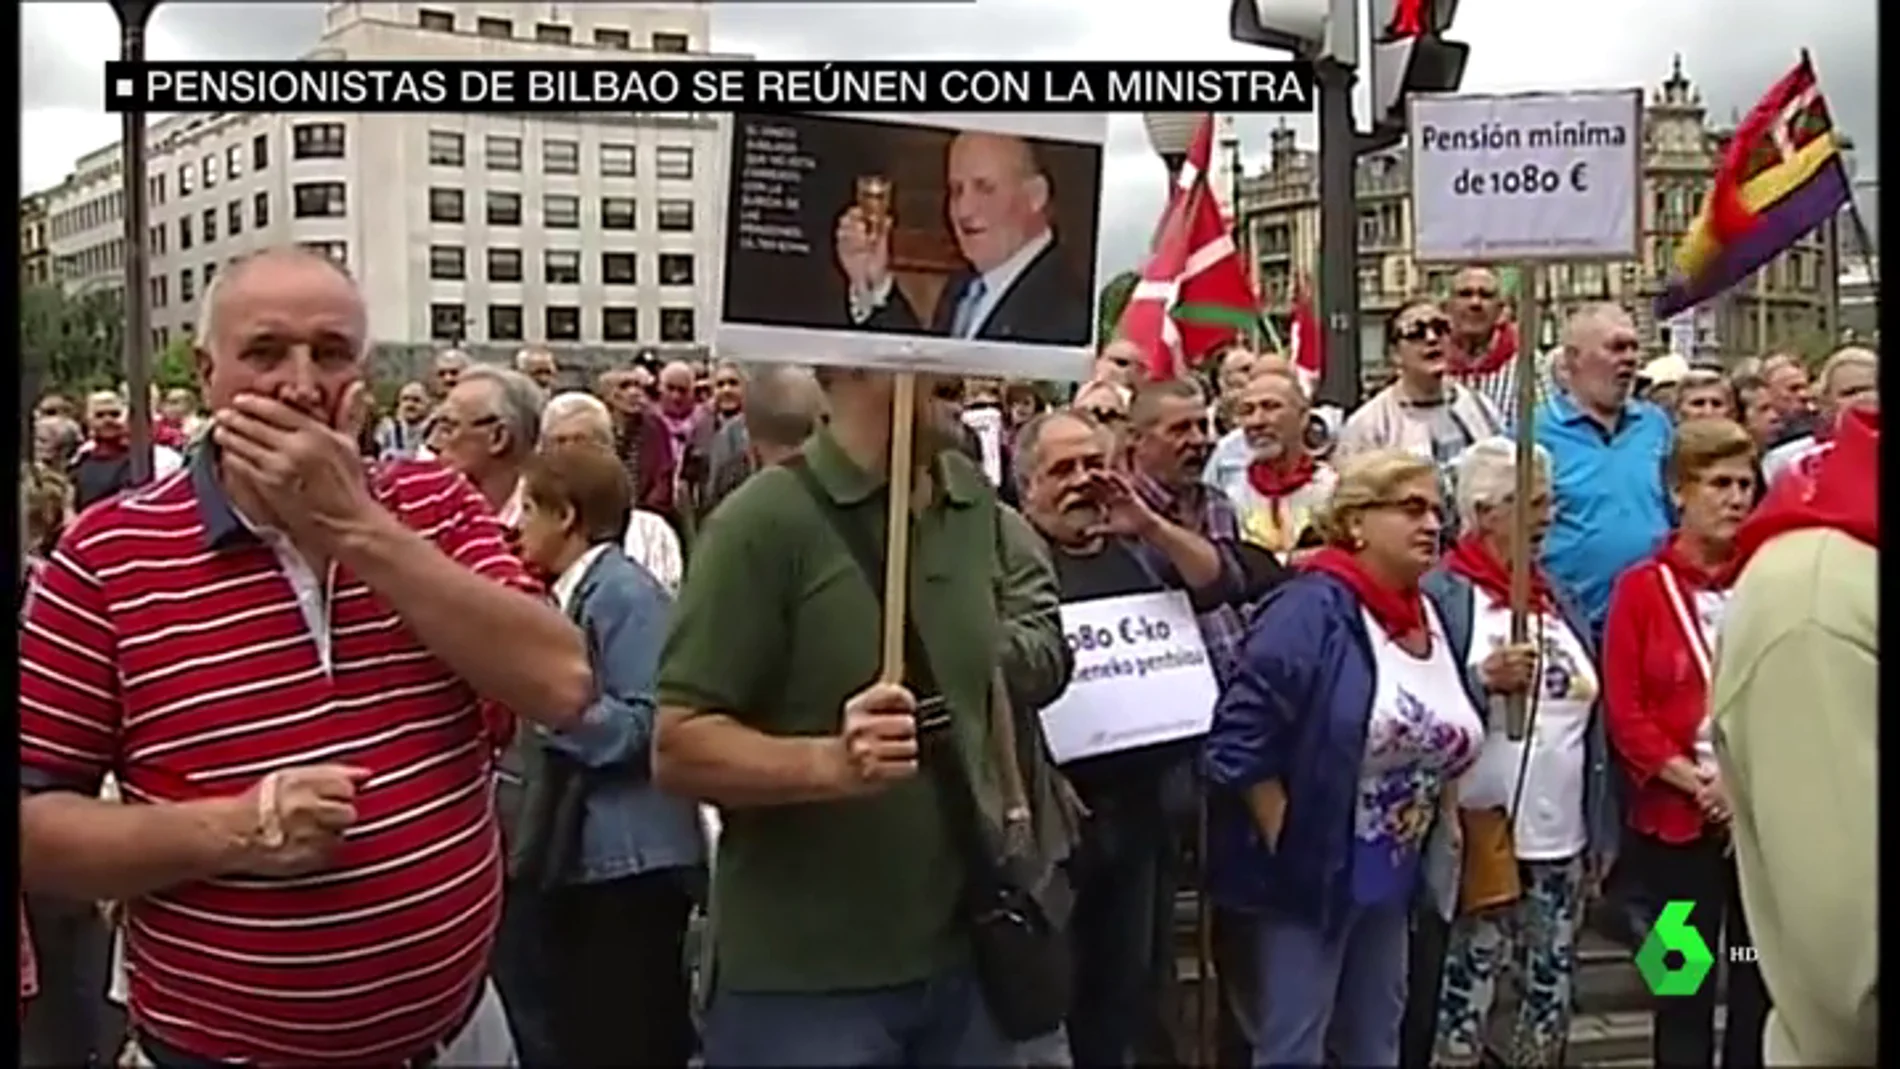 El descontento de los pensionistas ante el rechazo del Gobierno de poner una pensión mínima de 1.080 euros: "Vamos a seguir movilizándonos"